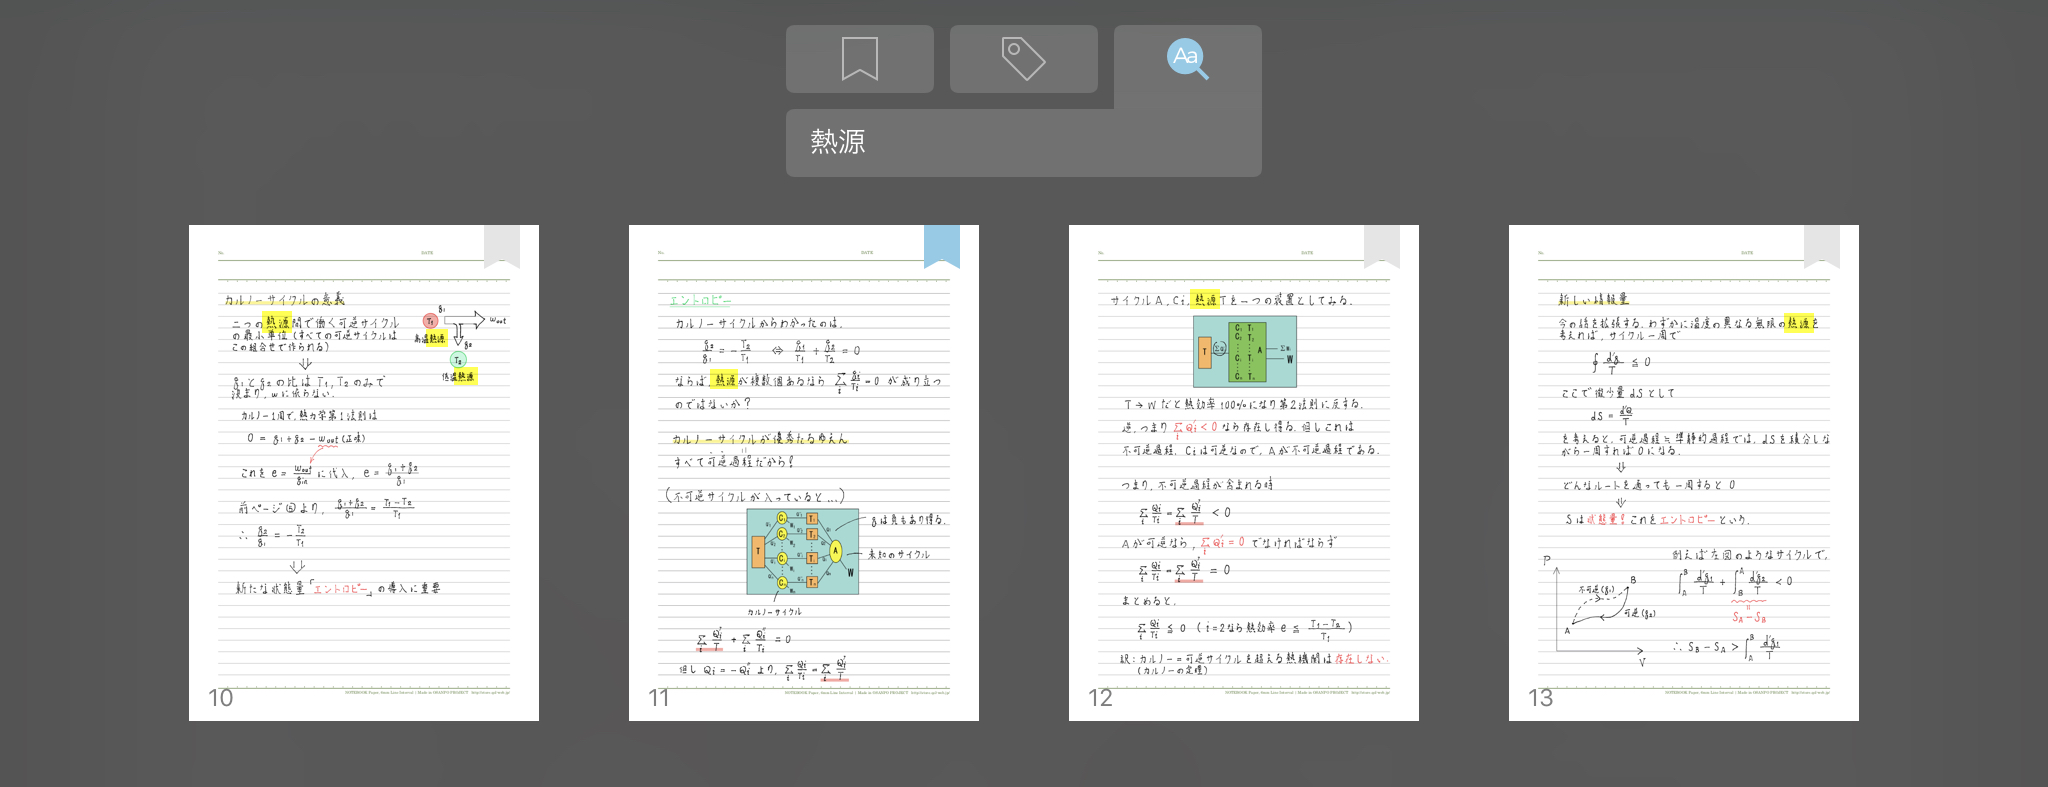   「Noteshelf」  と  「GoodNotes」  の共通点・違いを比較。  iPad手書きノートアプリの勝者はどっち？